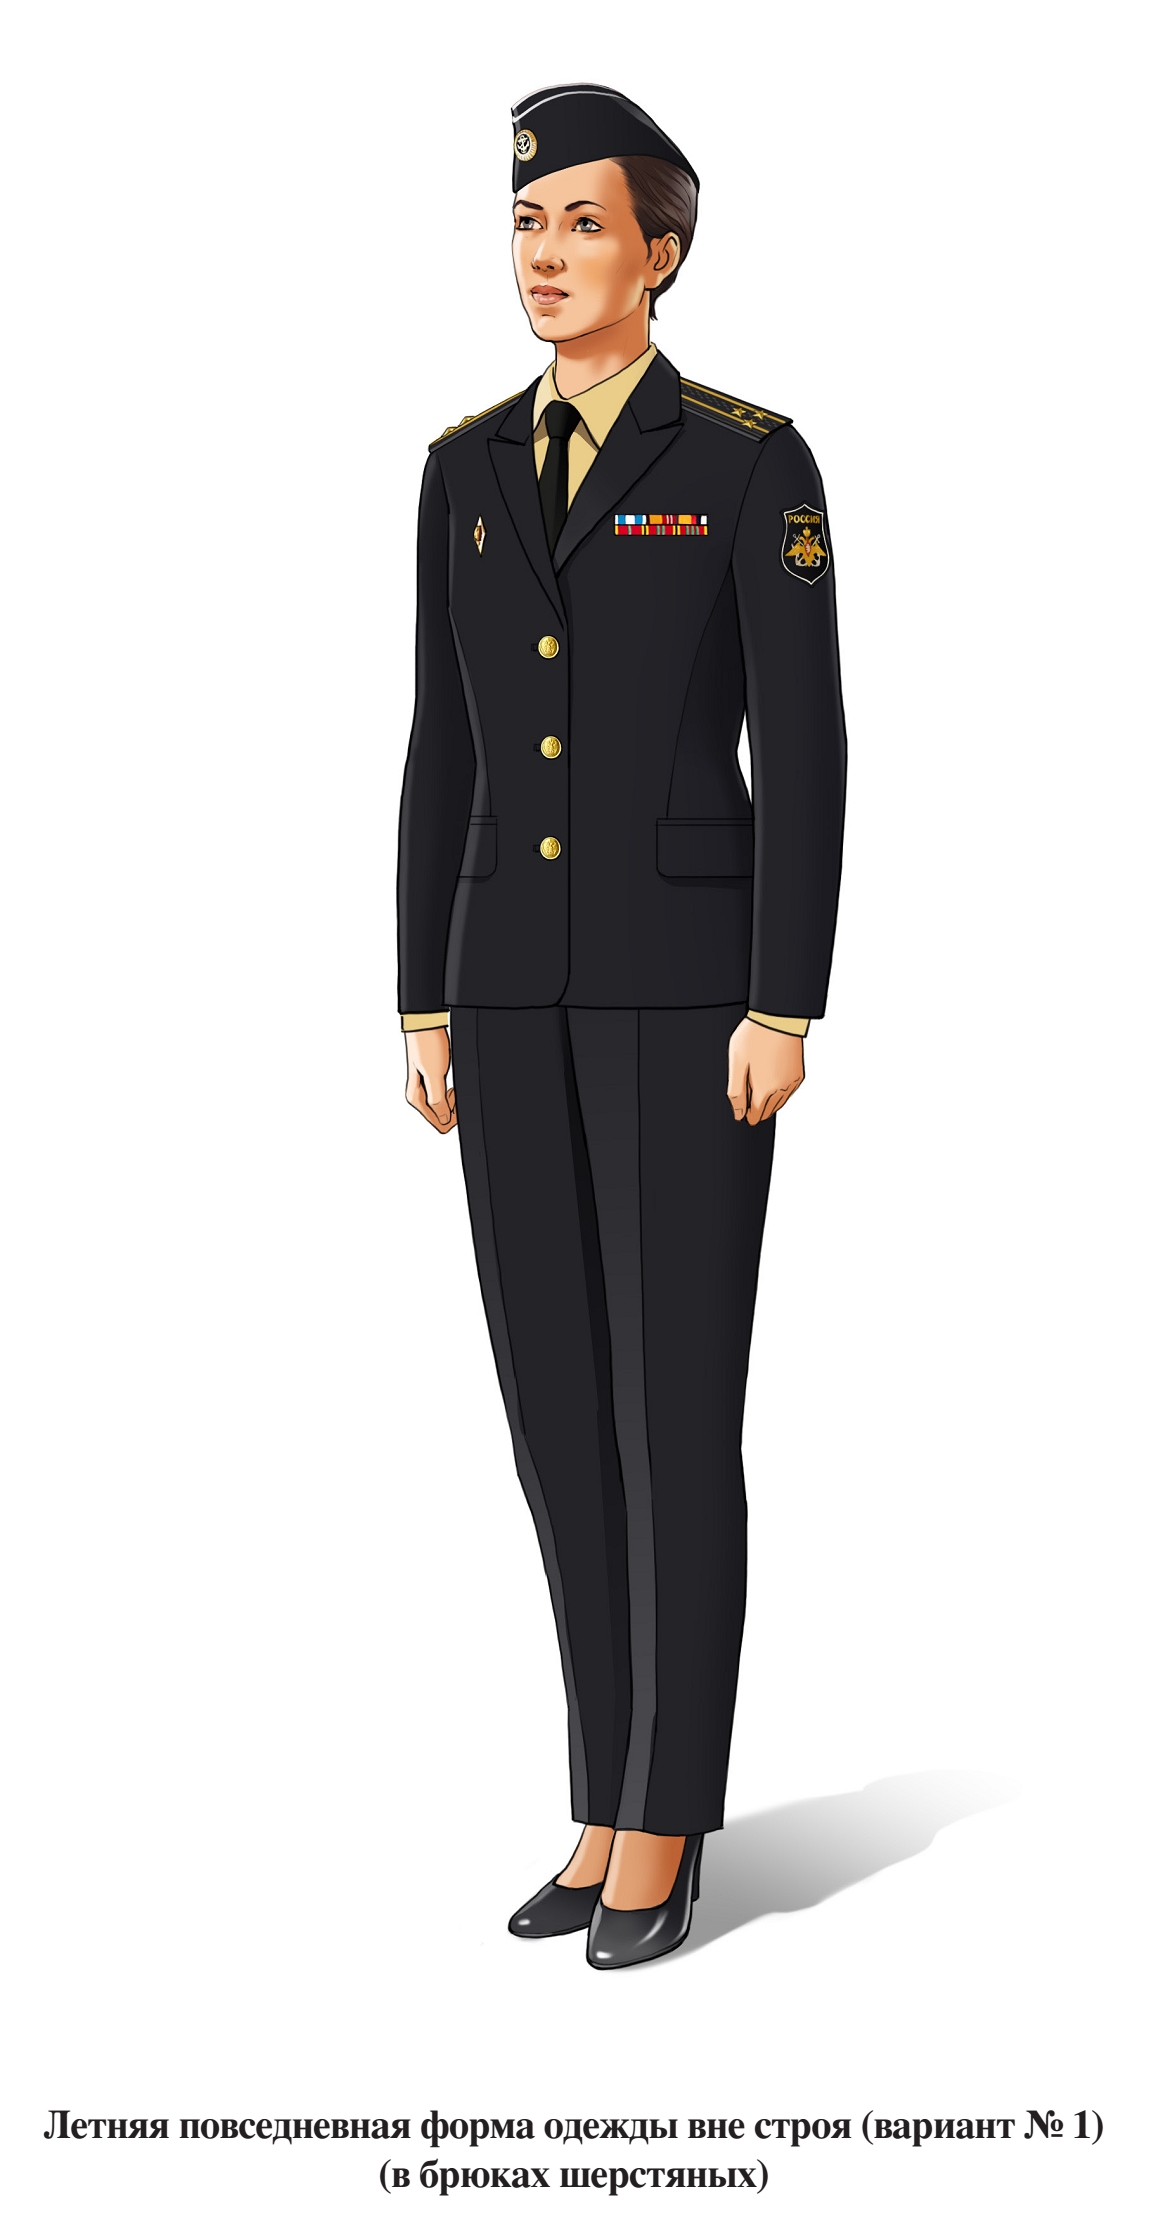 Летняя повседневная форма военнослужащих женского пола вне строя, в брюках